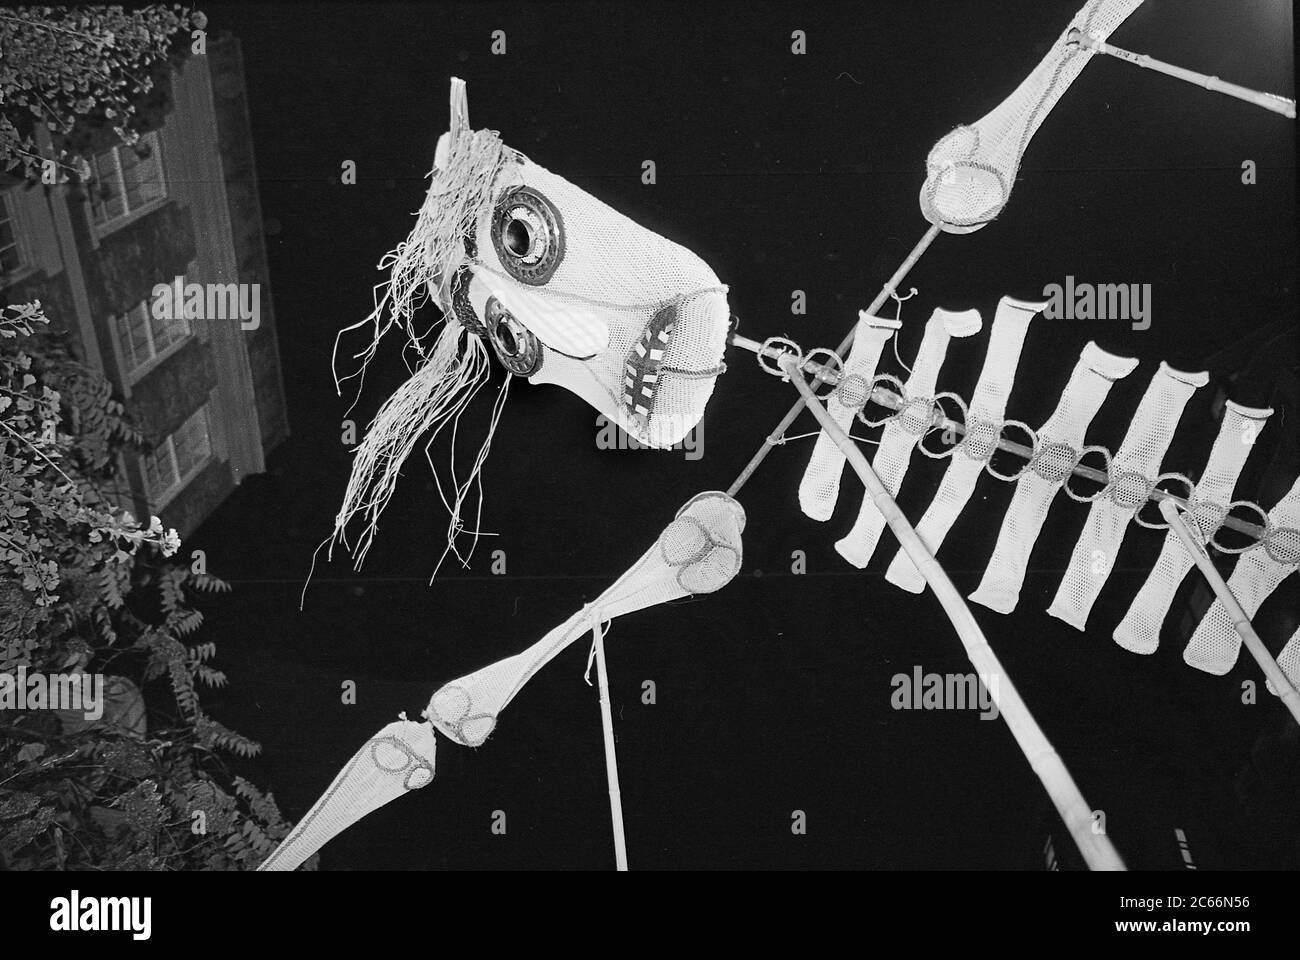 Enorme marionetta di scheletro alla Greenwich Village Halloween Parade, New York City, USA negli anni '80 fotografata con film in bianco e nero di notte. Foto Stock